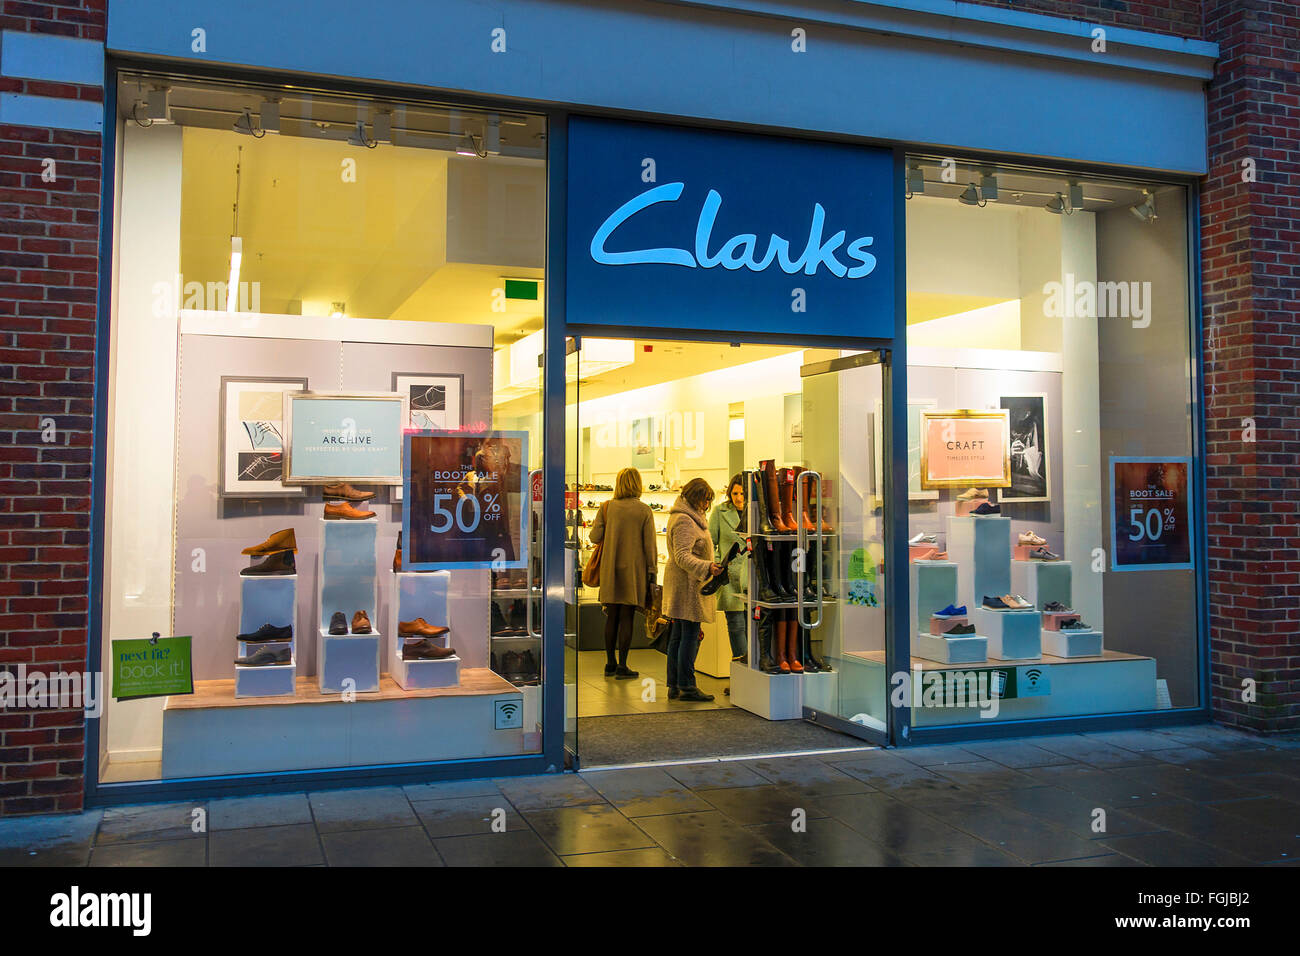 Tienda De Zapatos Clarks Tienda En High Street, Southend On Sea, Essex, Reino Unido, Con Carteles De Vende" En Ventana De La El 50% De La A Mitad